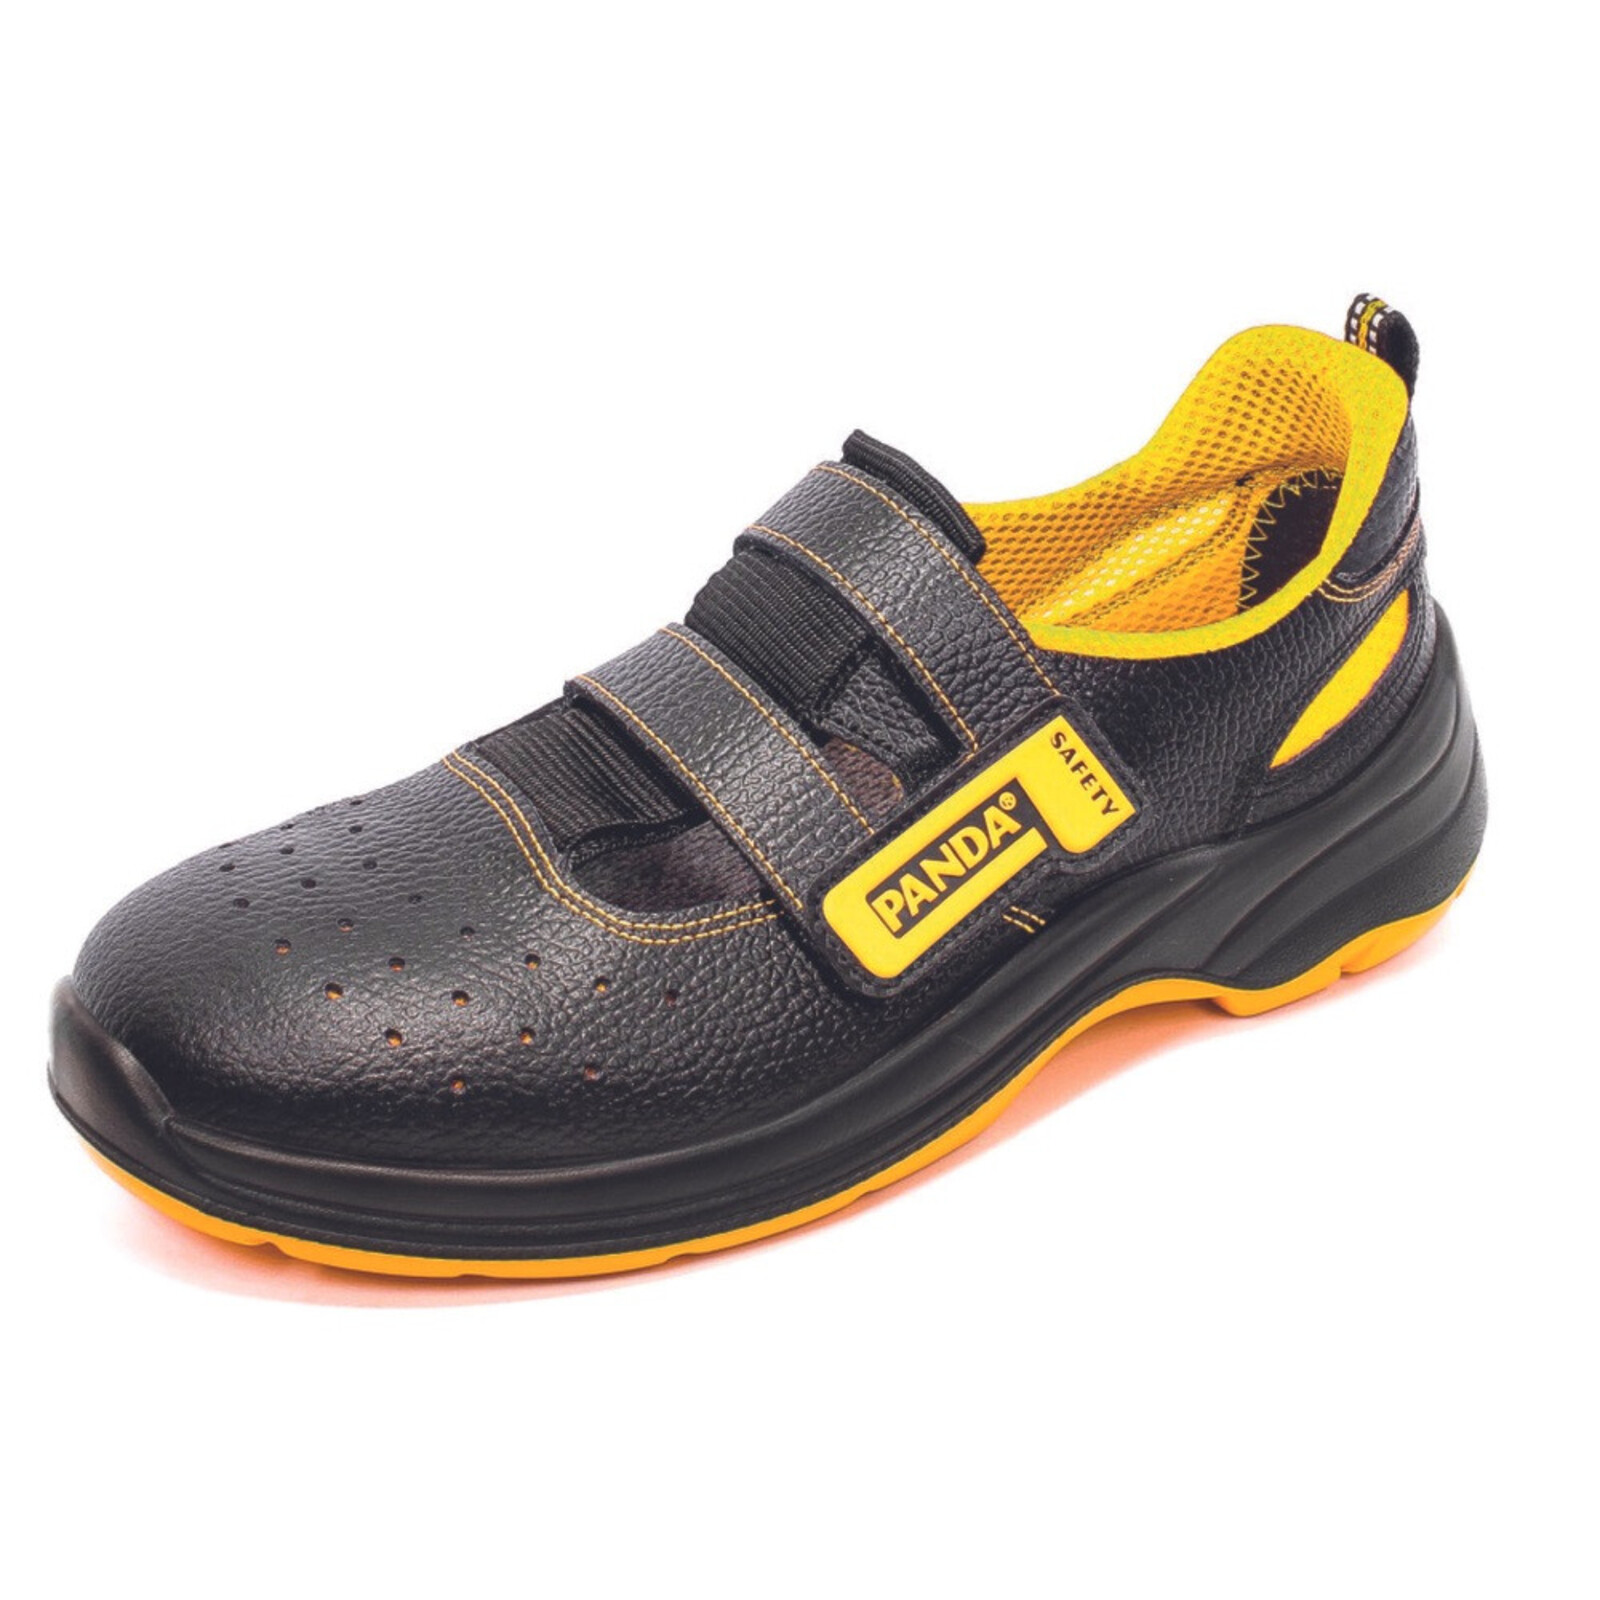 Bezpečnostné sandále Panda Basic Venezia MF S1P SRC - veľkosť: 40, farba: čierna/žltá